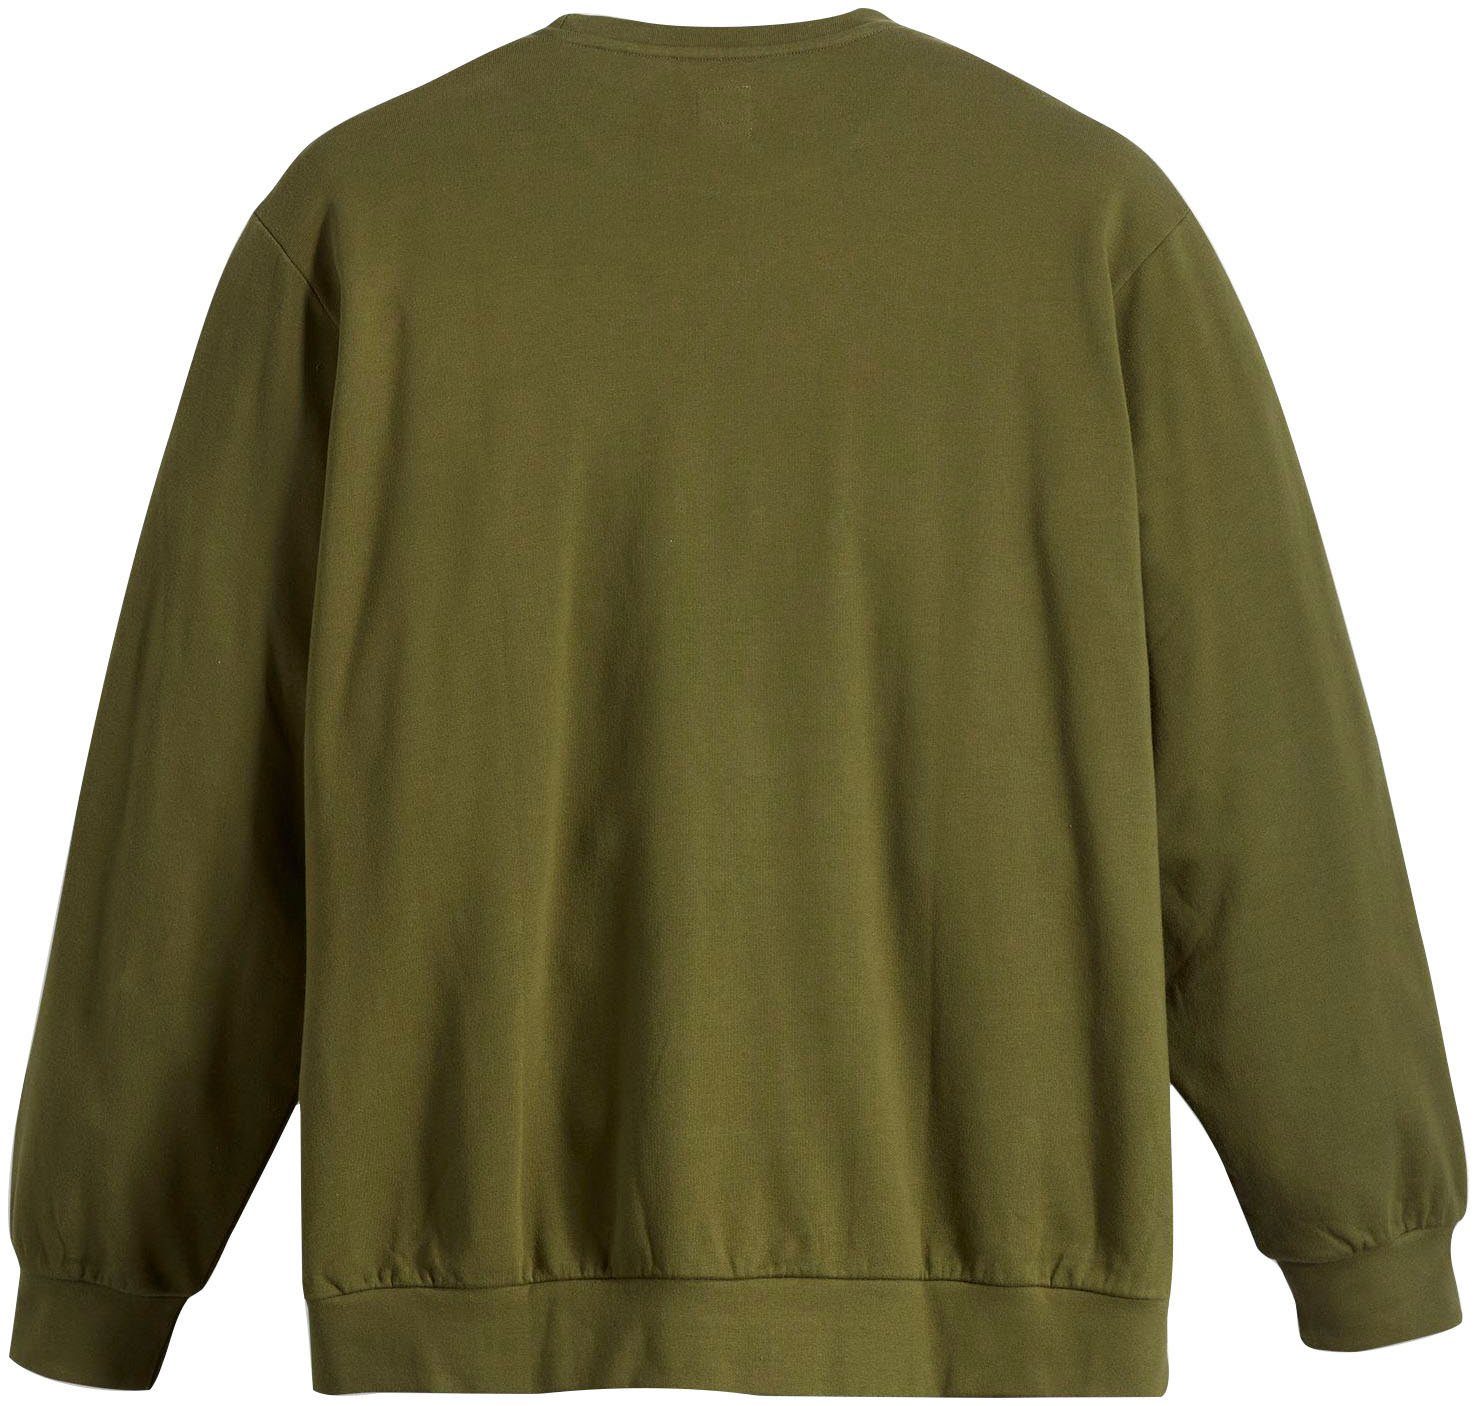 Sweatshirt HM Levi's® BIG ORIGINAL CREW Plus